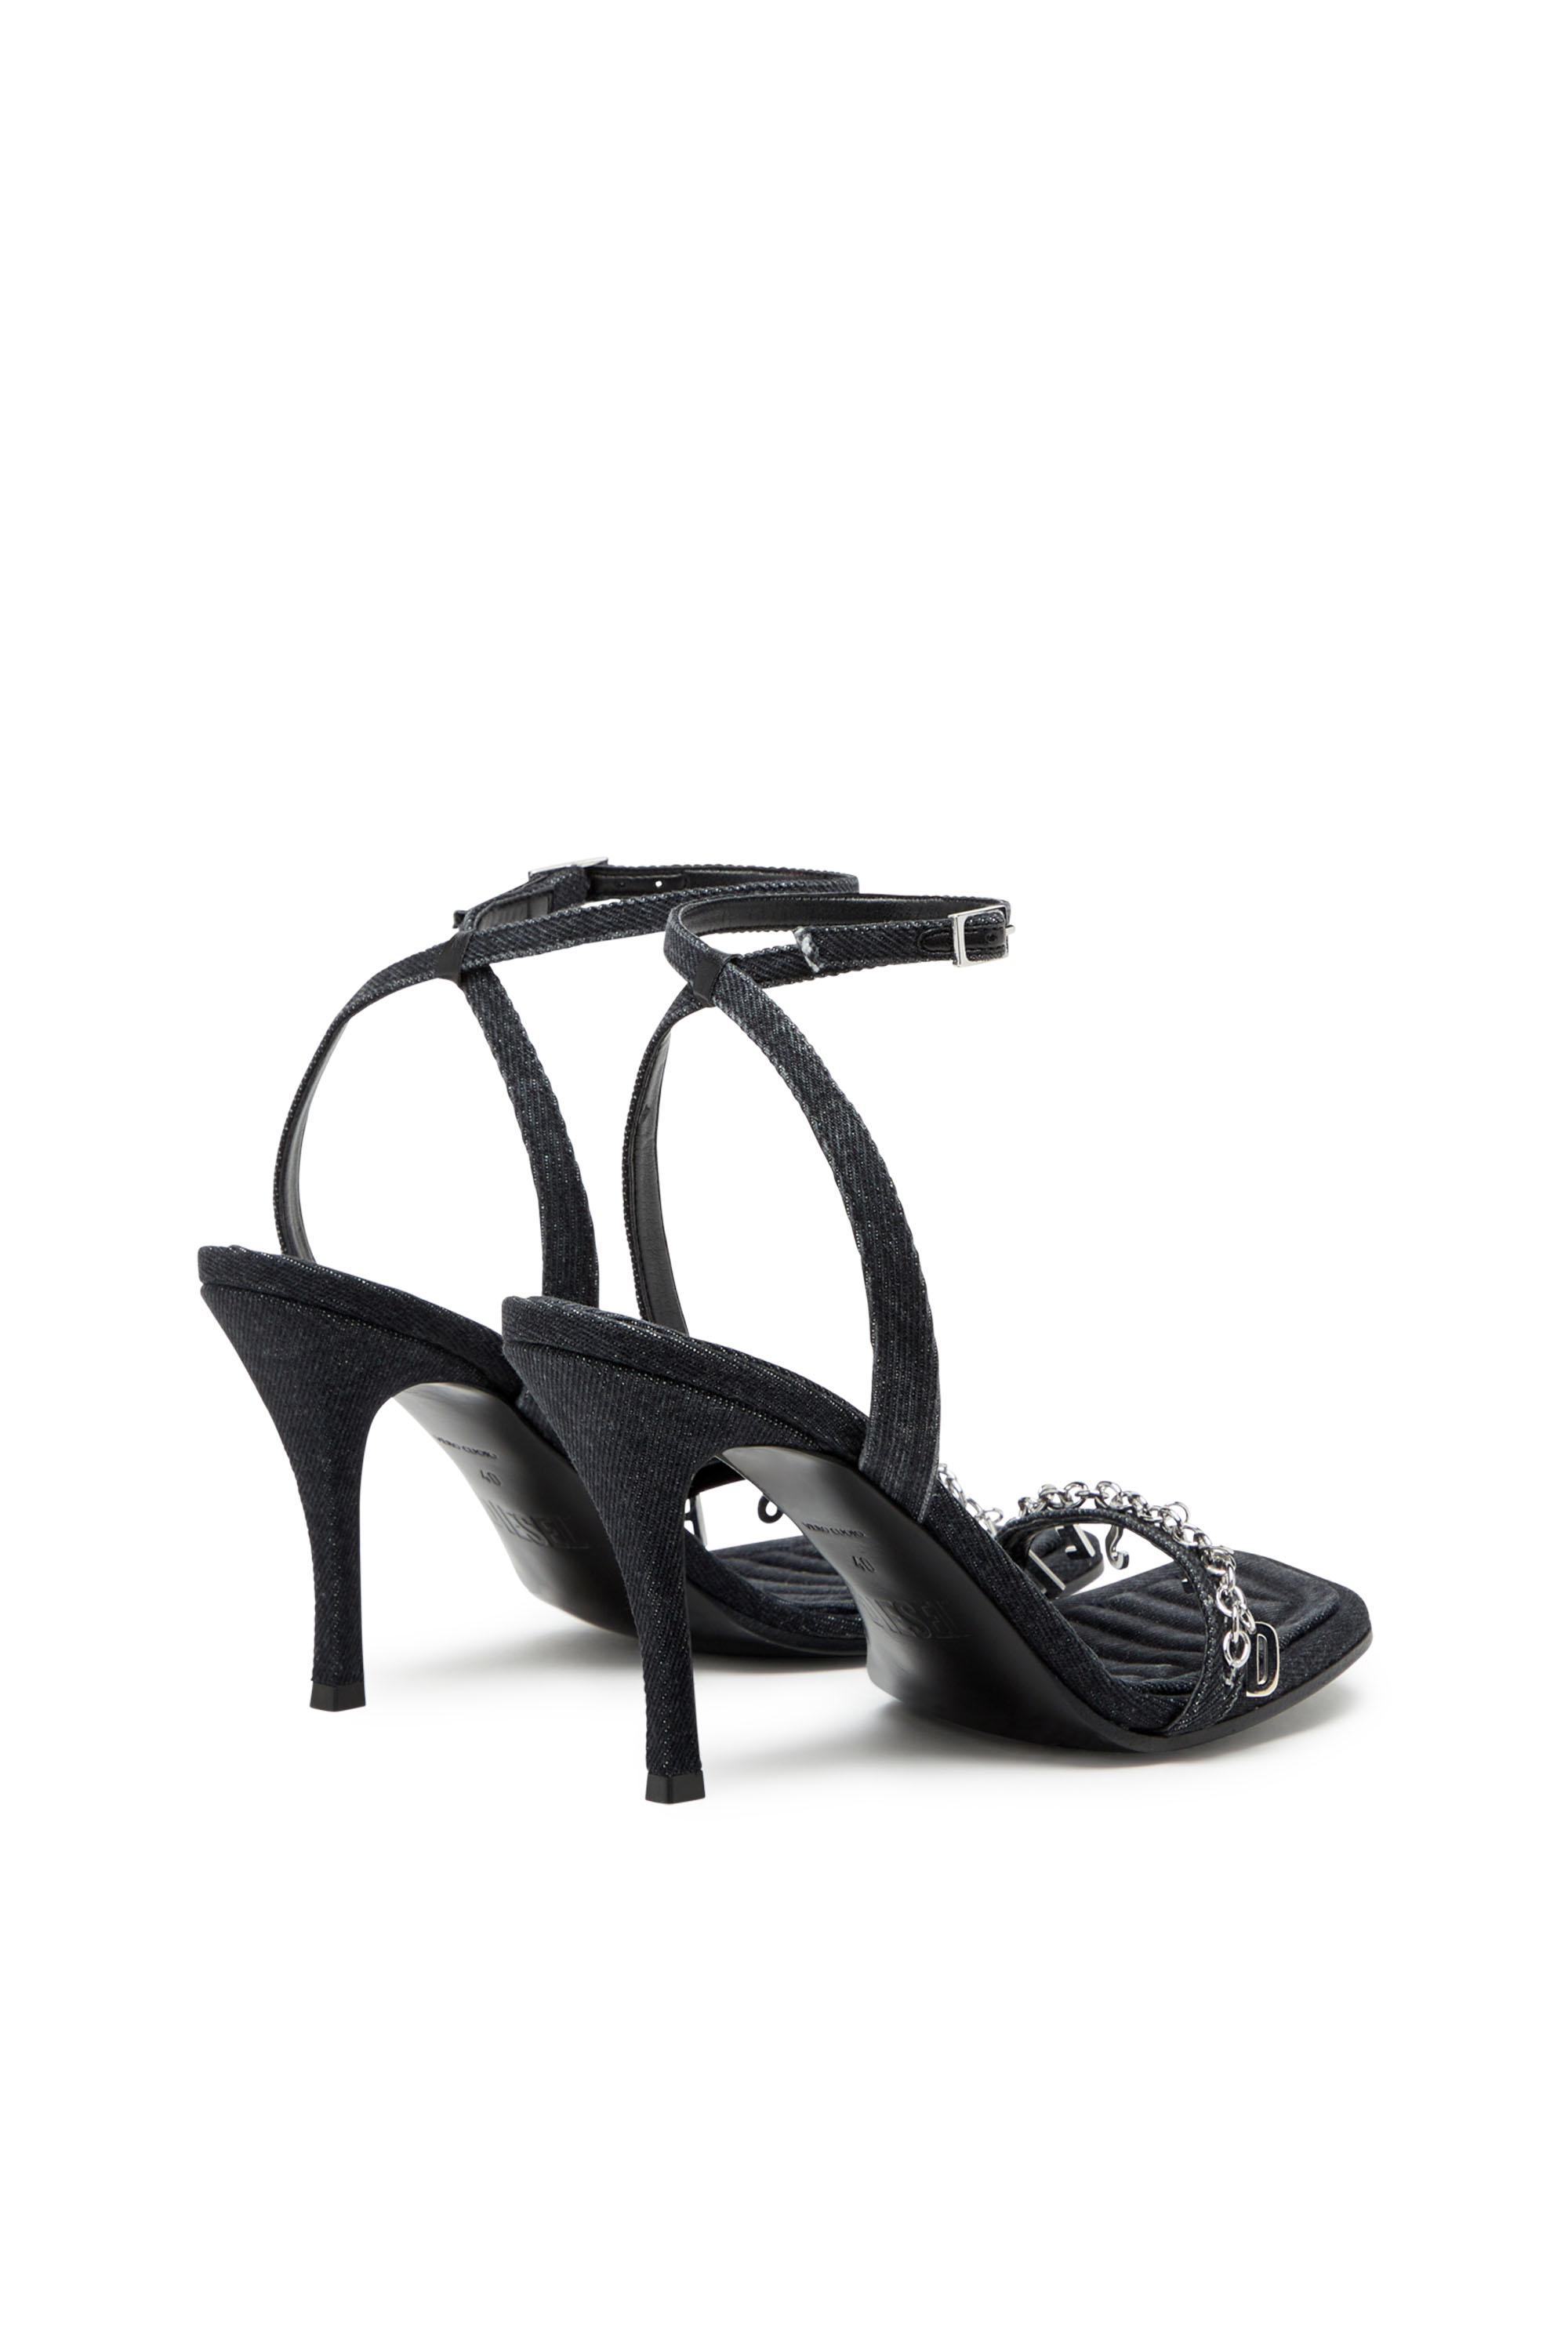 Diesel - D-VINA SDL, Woman D-Vina Sdl Sandals - Denim sandals with Diesel charms in Black - Image 3